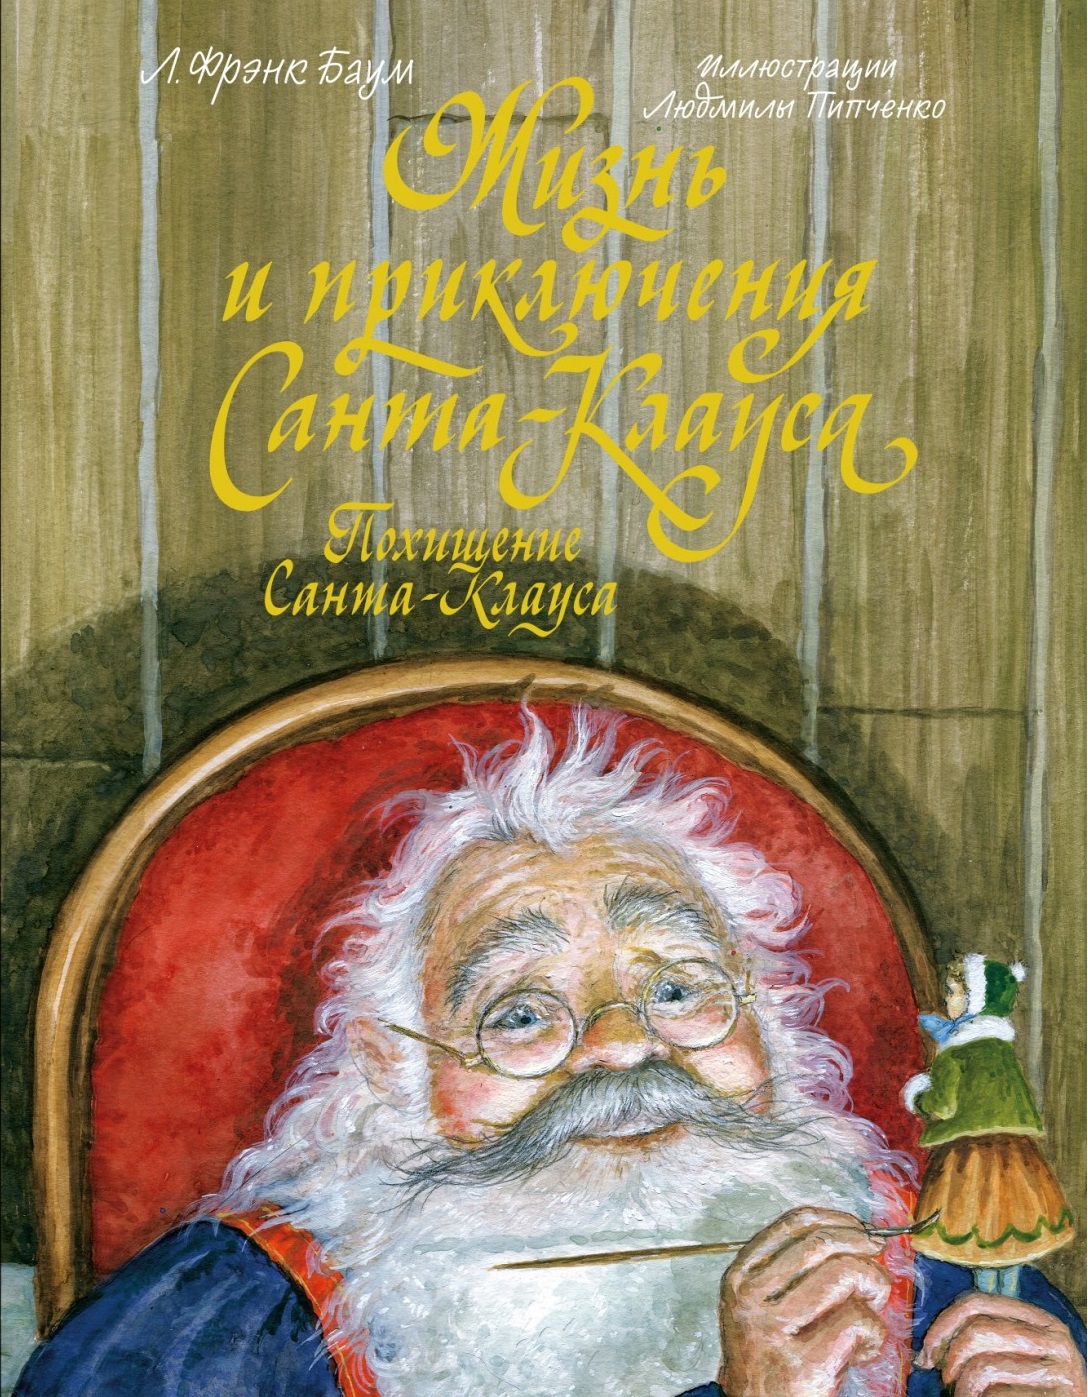 Жизнь и приключения Санта-Клауса. Похищение Санта-Клауса георгина санта клаус декоративная